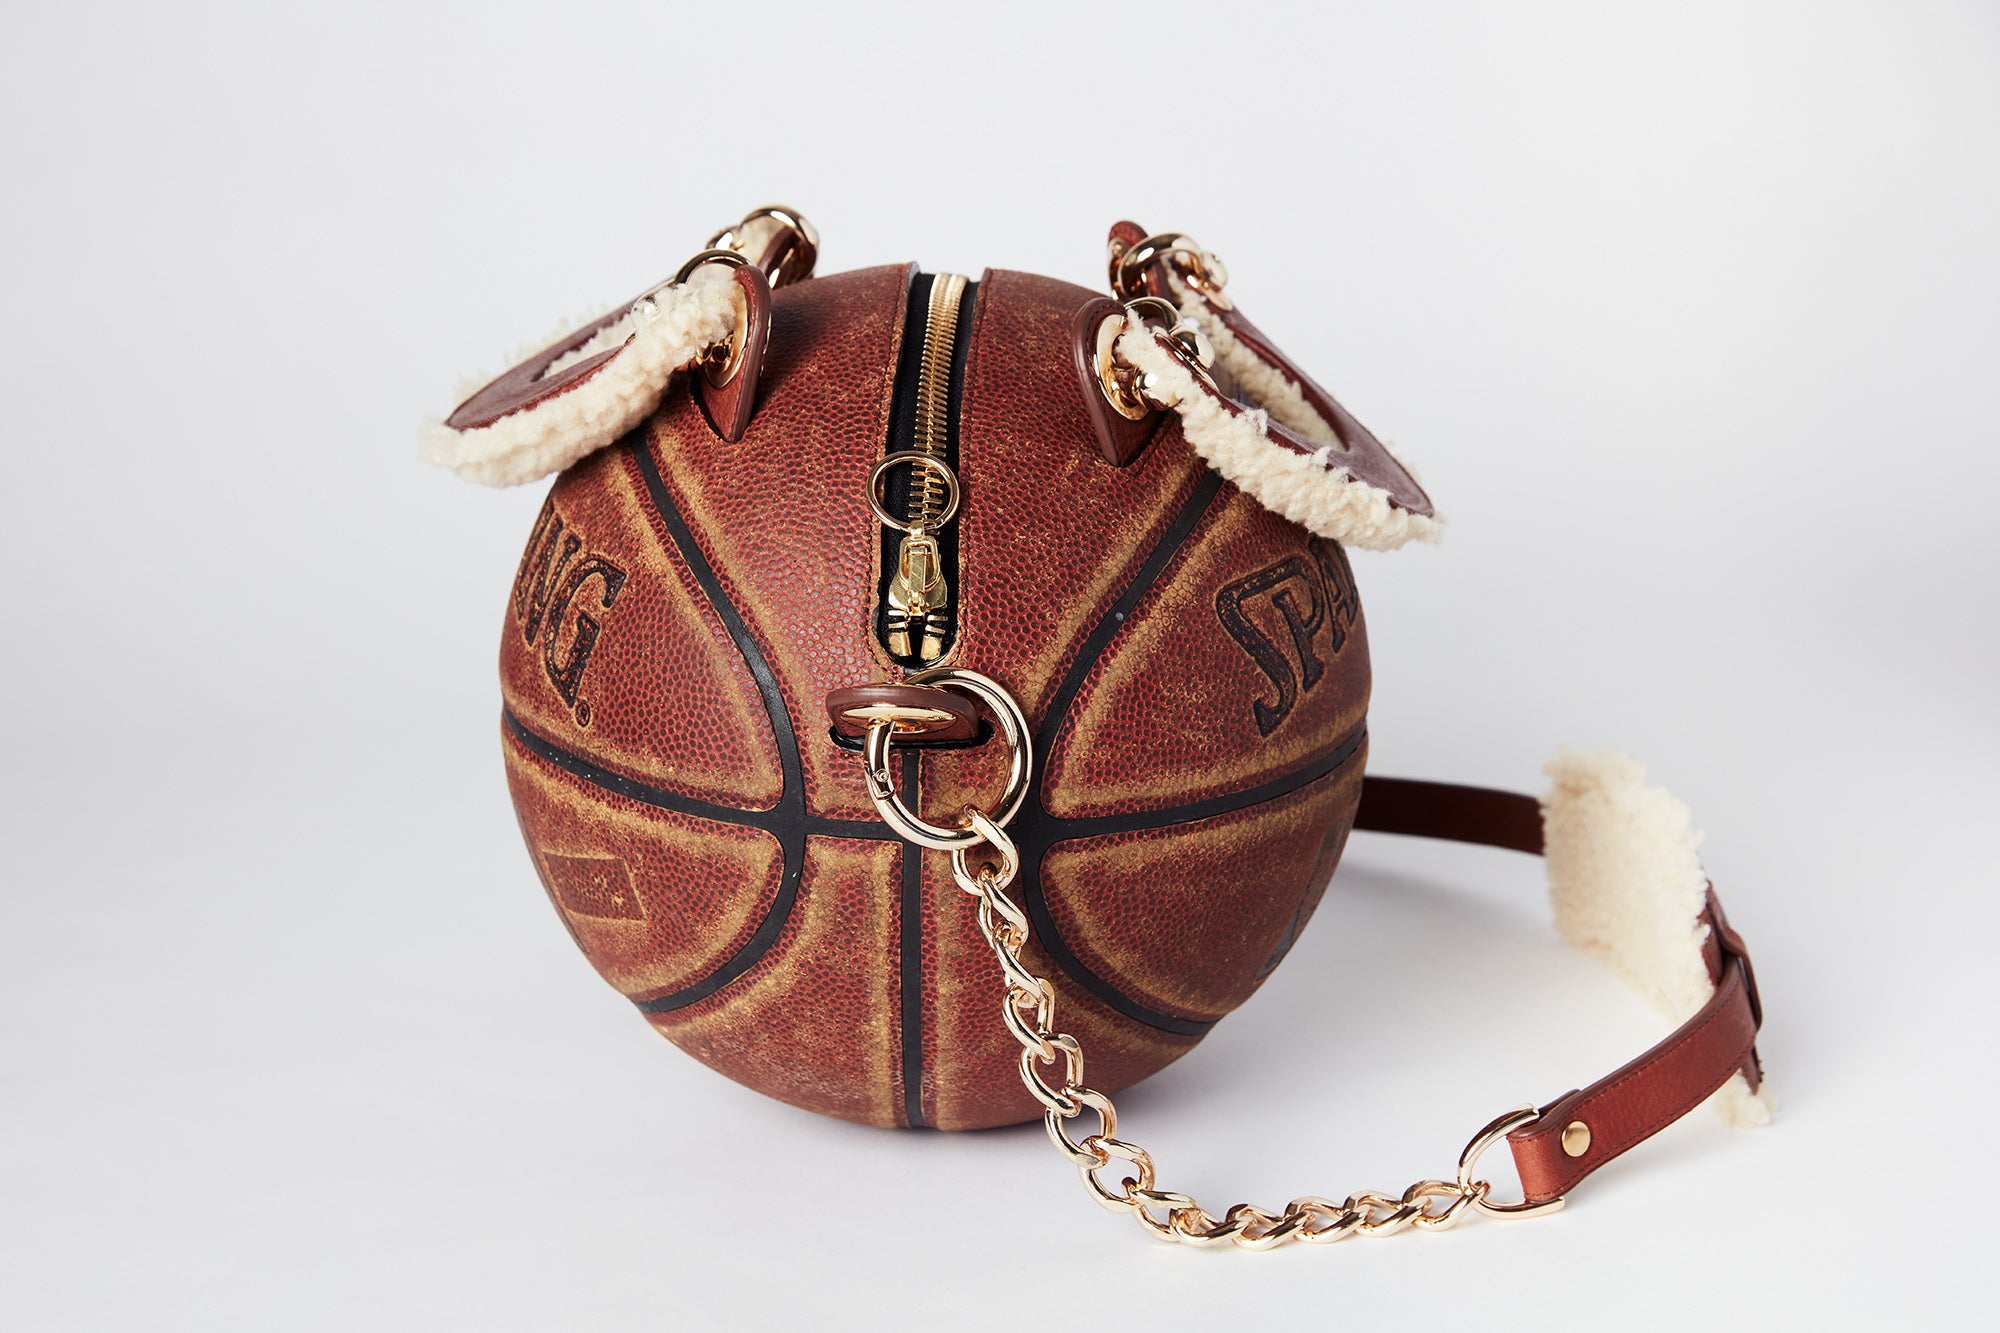 Vintage Spalding Basketball Bag